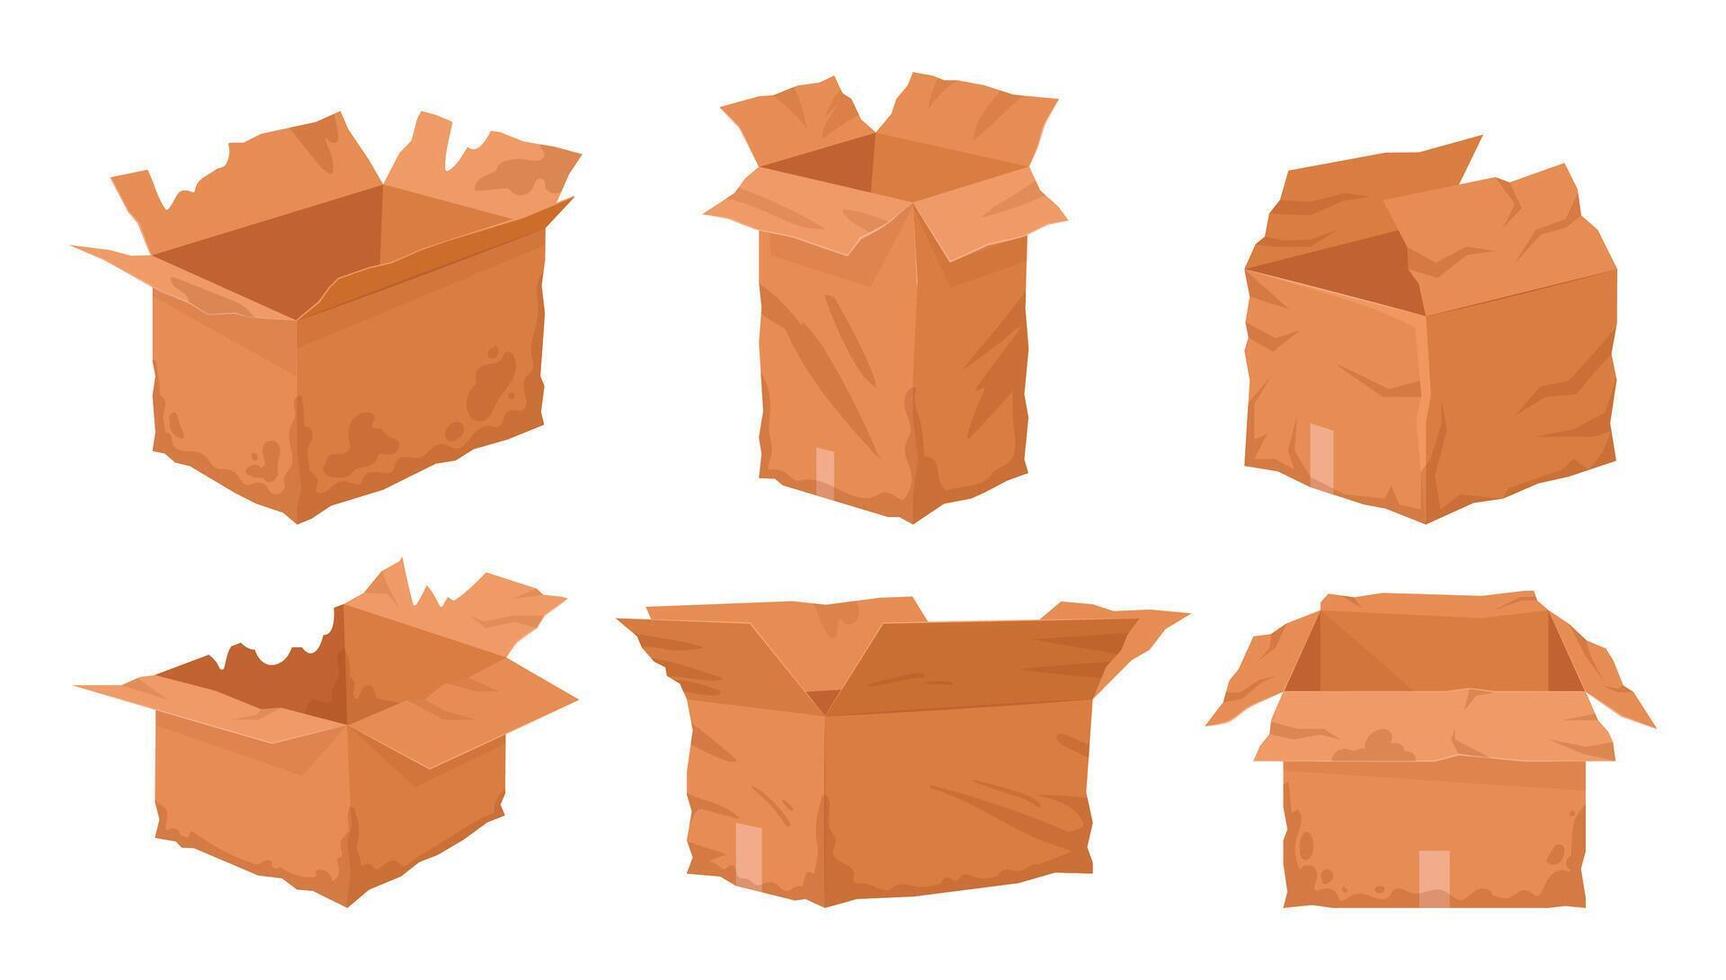 roto caja de cartón cajas estropeado cartulina entrega caja, dañado, mojado o Rasgado Envío contenedores plano vector ilustración colocar. dañado estropeado cajas en blanco